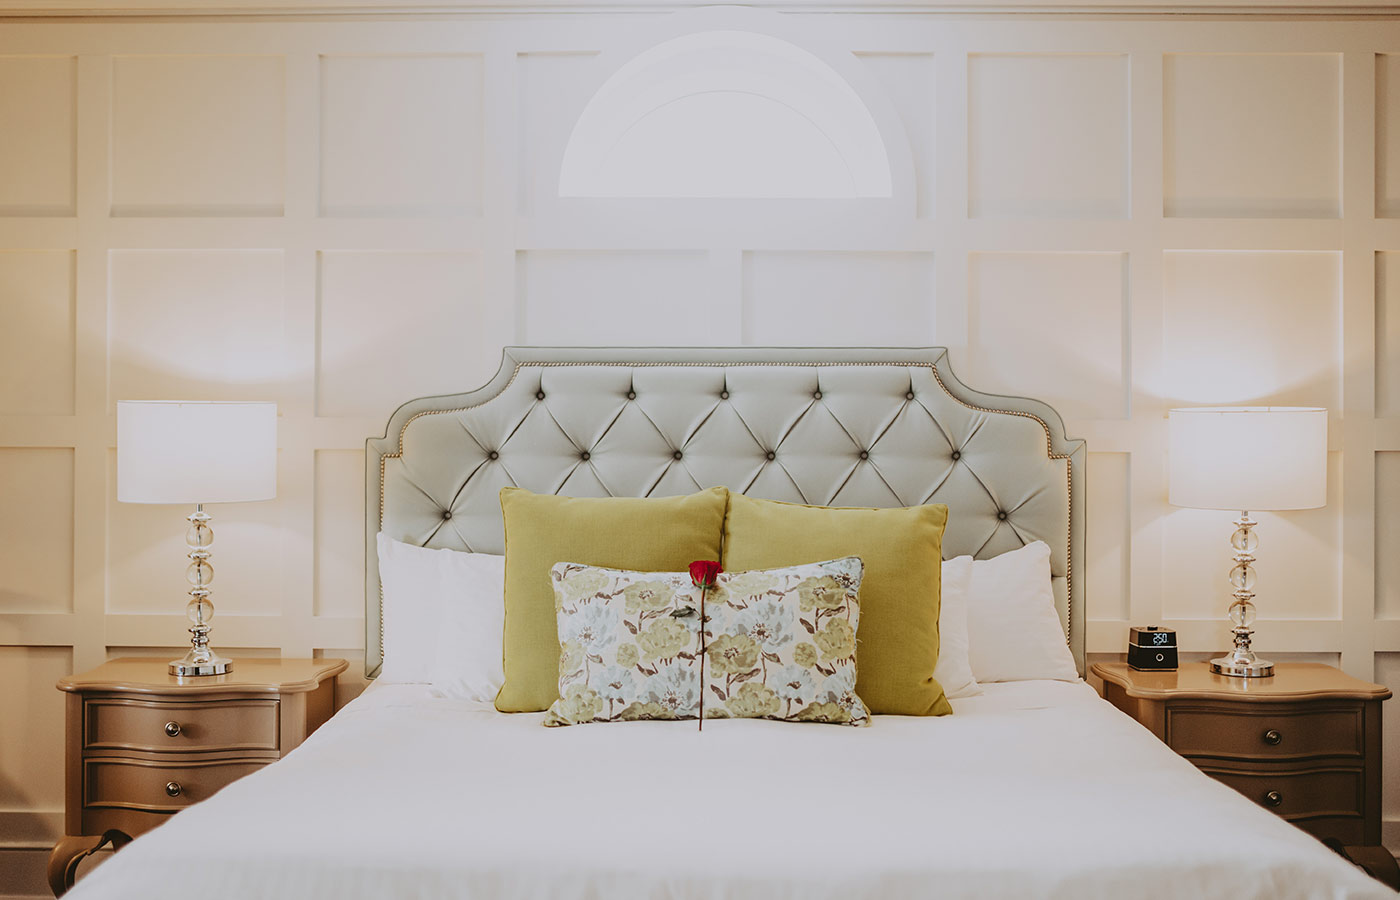 Queen’s Landing bedroom with rose on bed